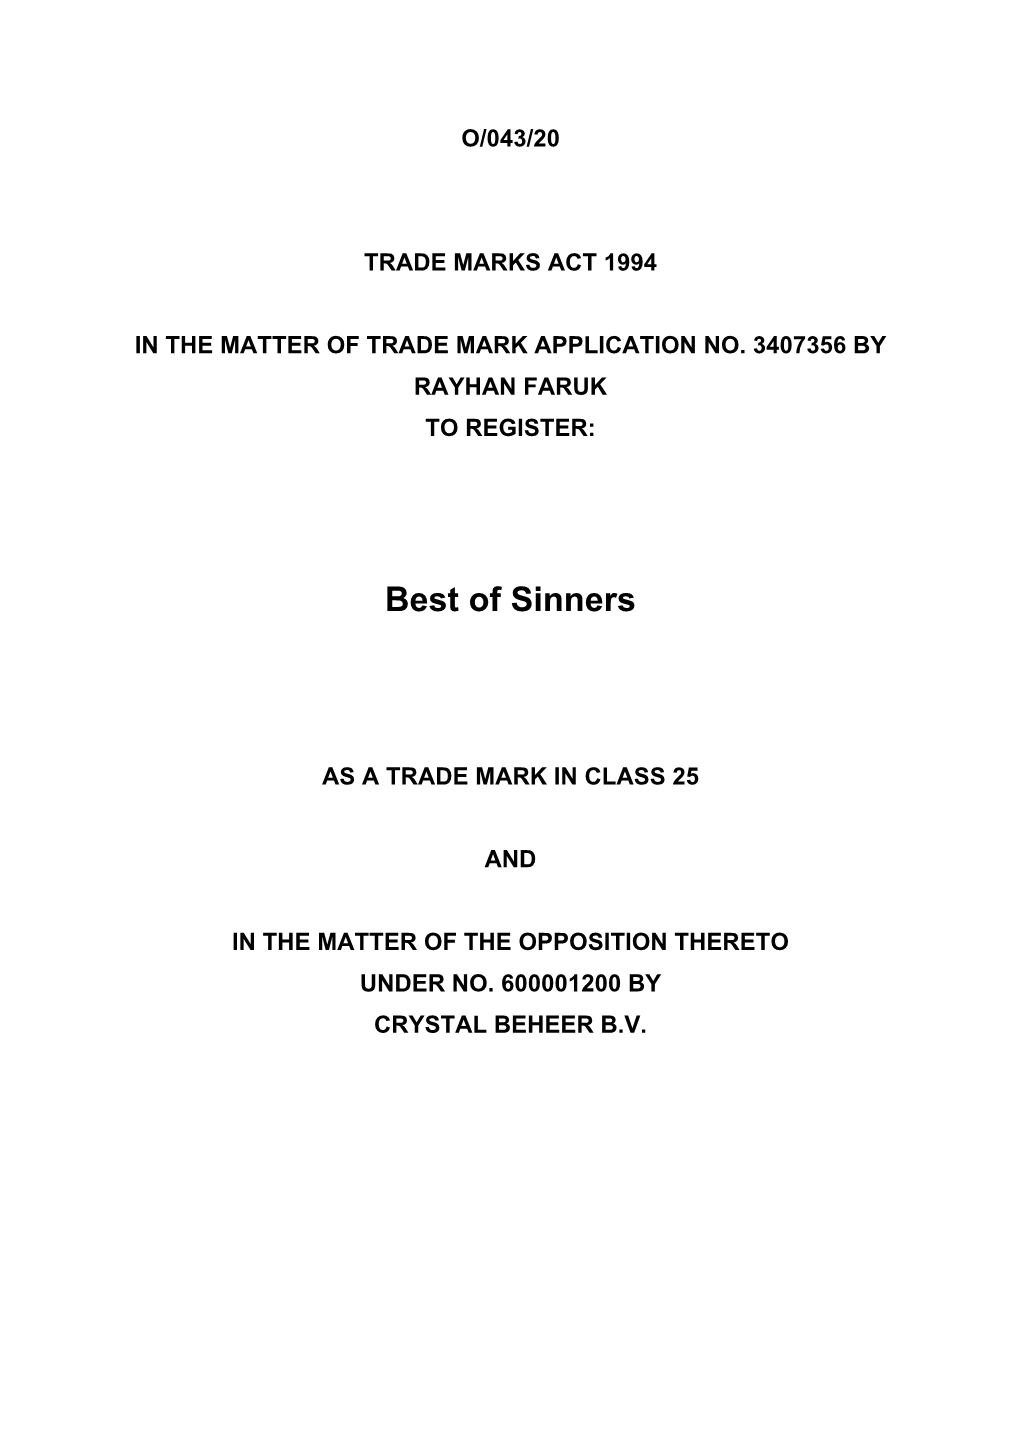 Trade Marks Inter Partes Decision O/043/20